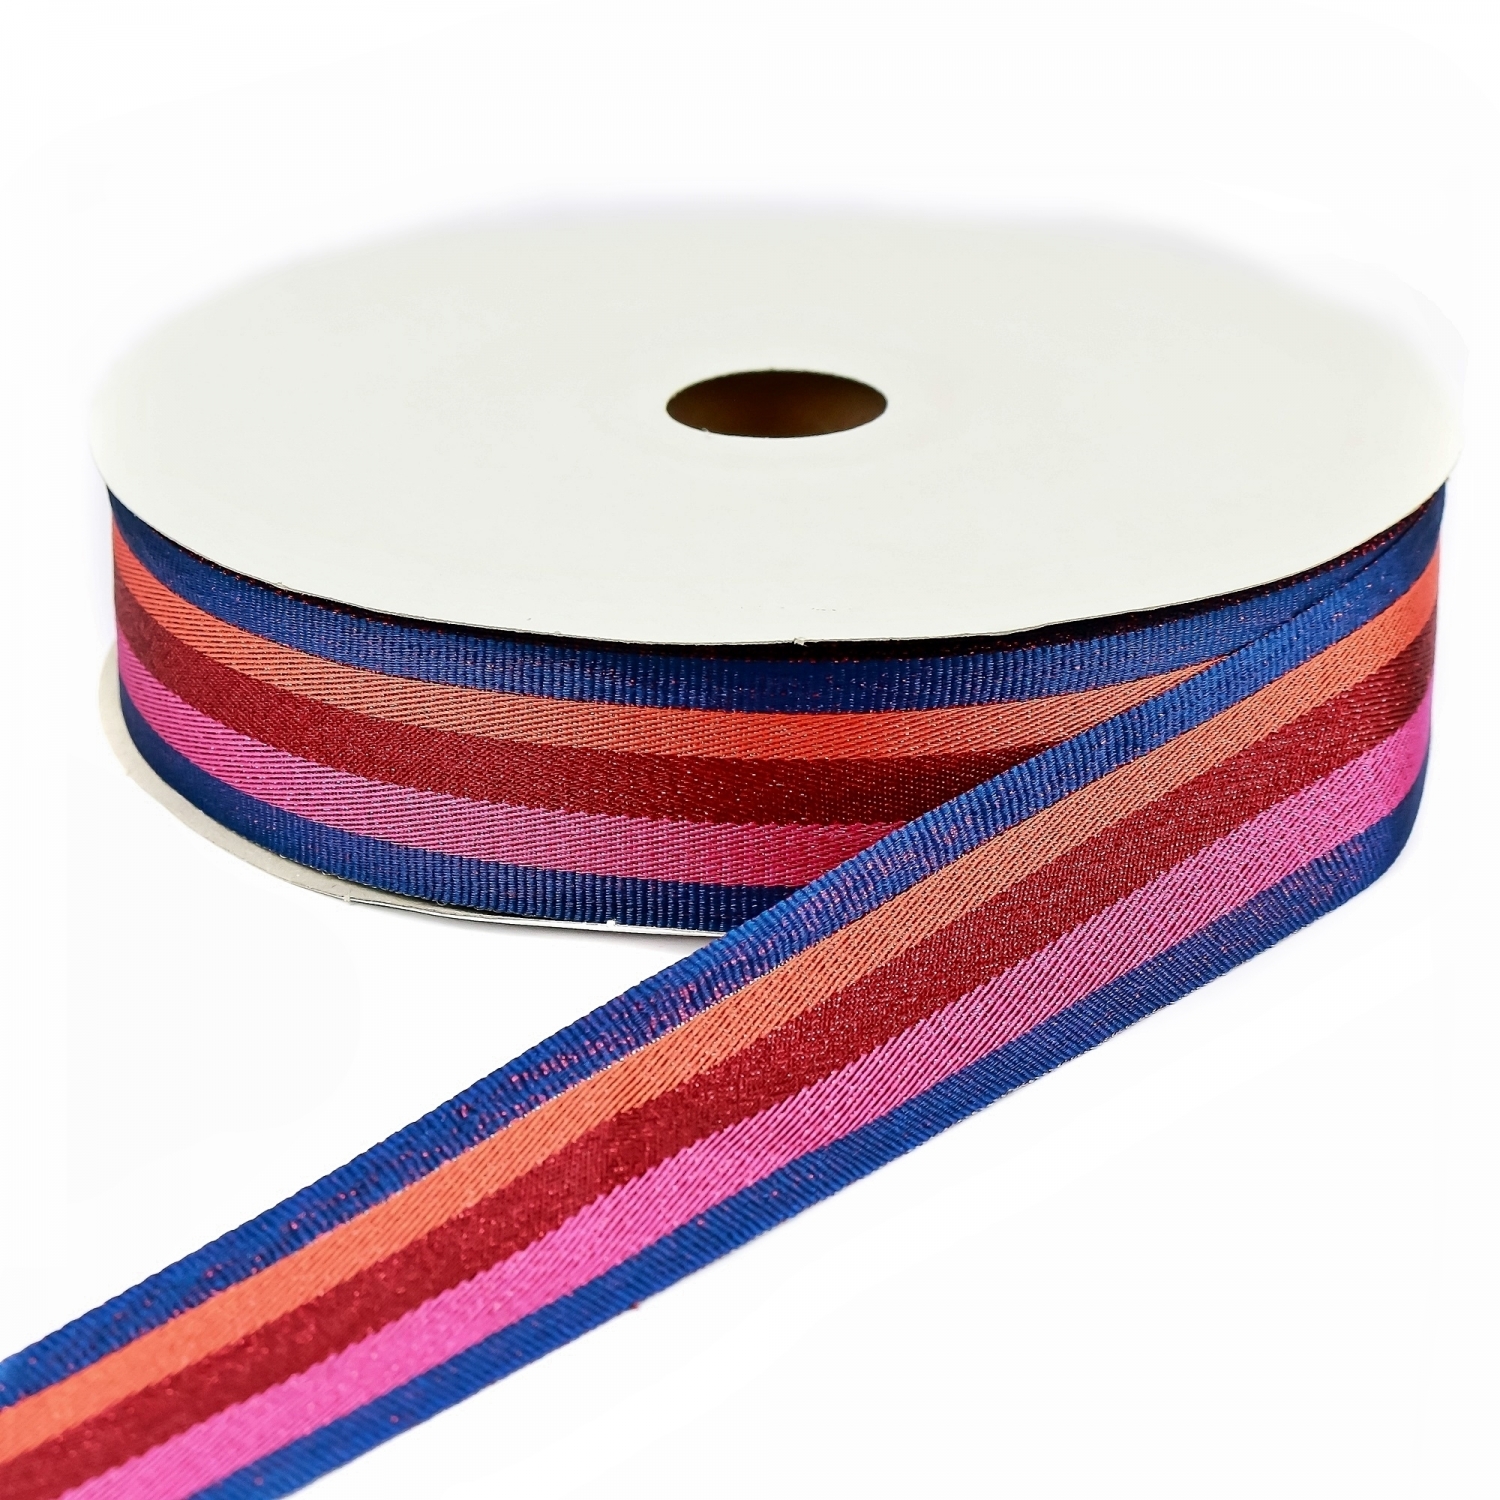 Metallic Thread Decorative Ribbon, width 35 mm (25 m/roll)Code: 181118